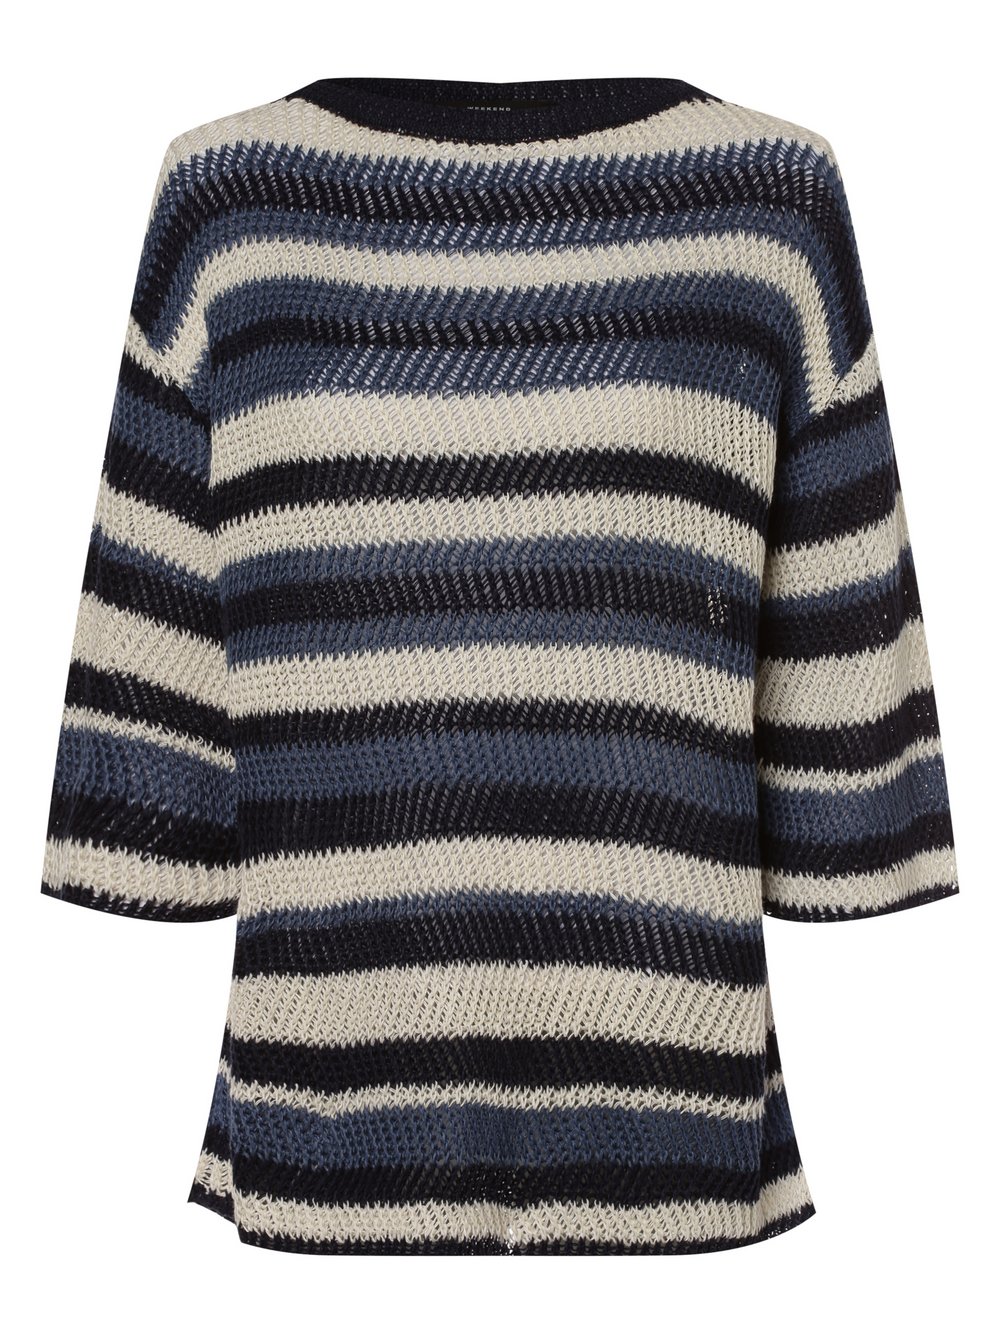 Max Mara Weekend - Damski sweter lniany – Gentile, niebieski|wielokolorowy